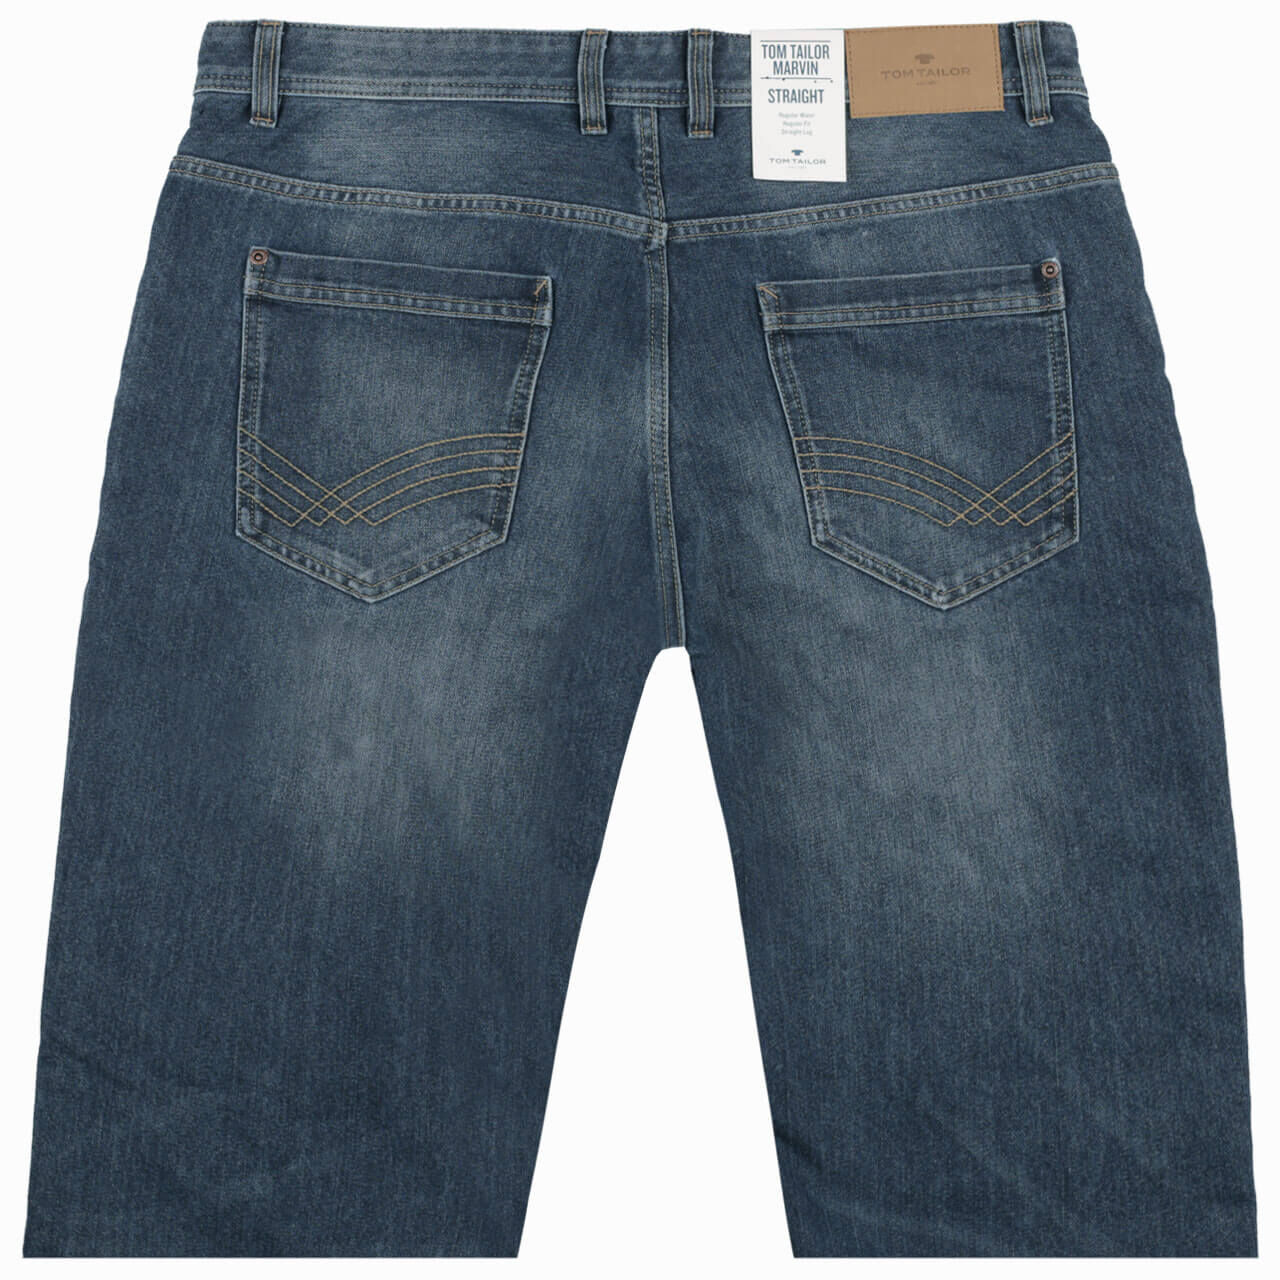 Tom Tailor Jeans Marvin für Herren in Mittelblau verwaschen, FarbNr.: 1052/10281